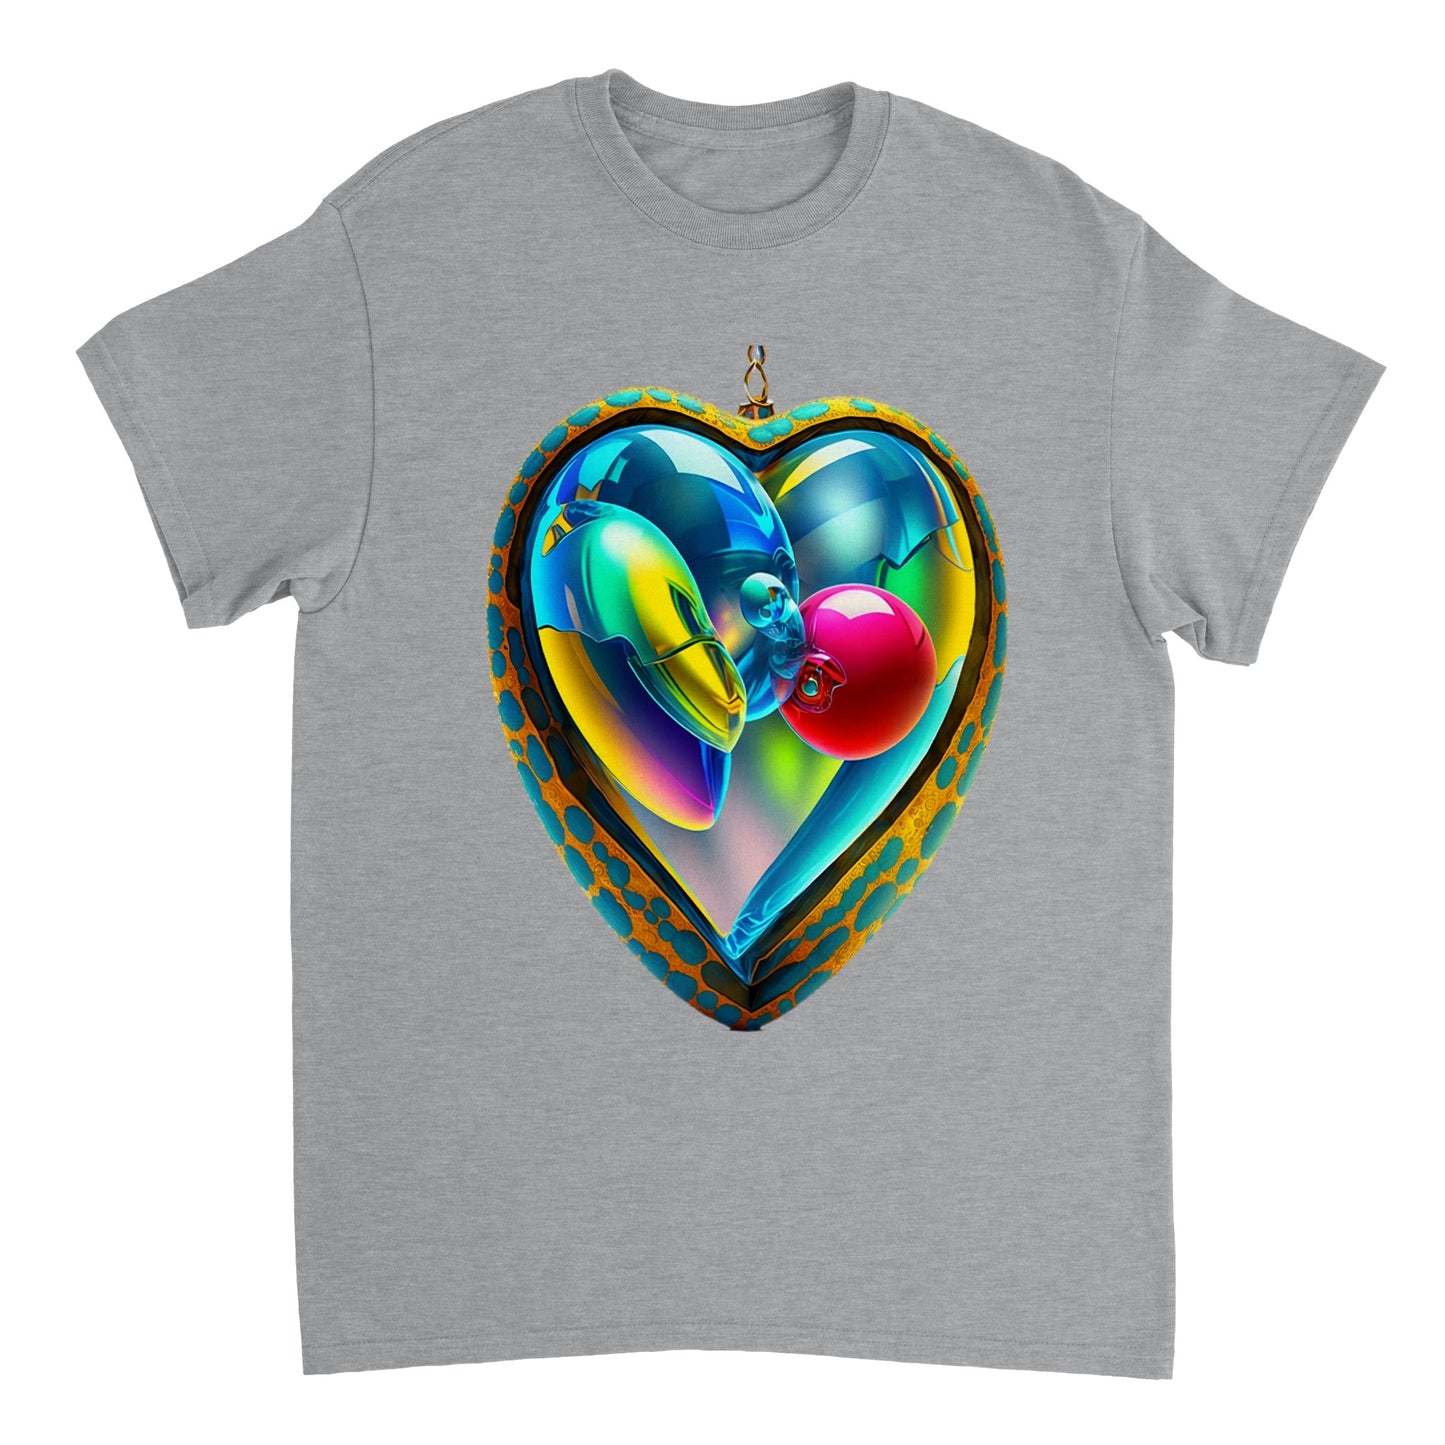 Love Heart - Heavyweight Unisex Crewneck T-shirt 31